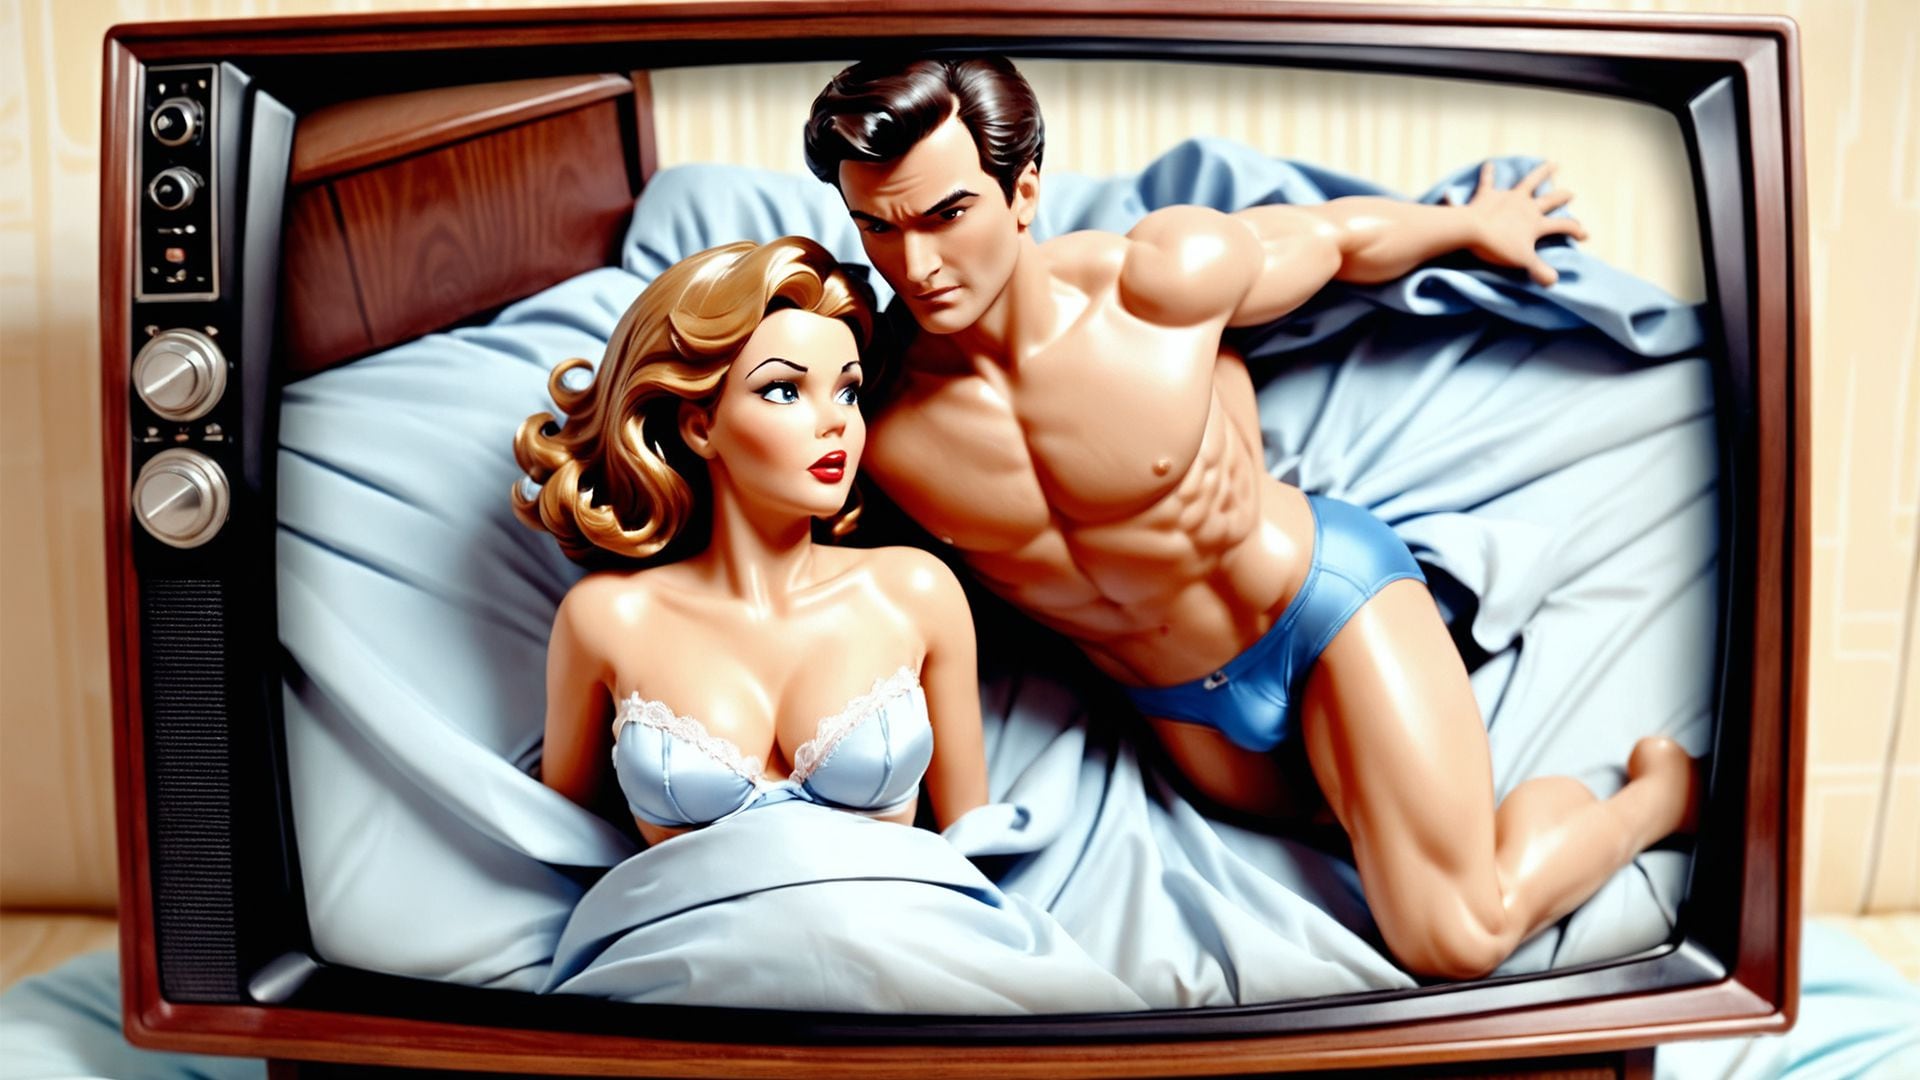 Imagen que aborda las falsedades promovidas por la industria de la pornografía, impactando la educación sexual y la comprensión de la sexualidad y la salud. (Imagen ilustrativa Infobae)